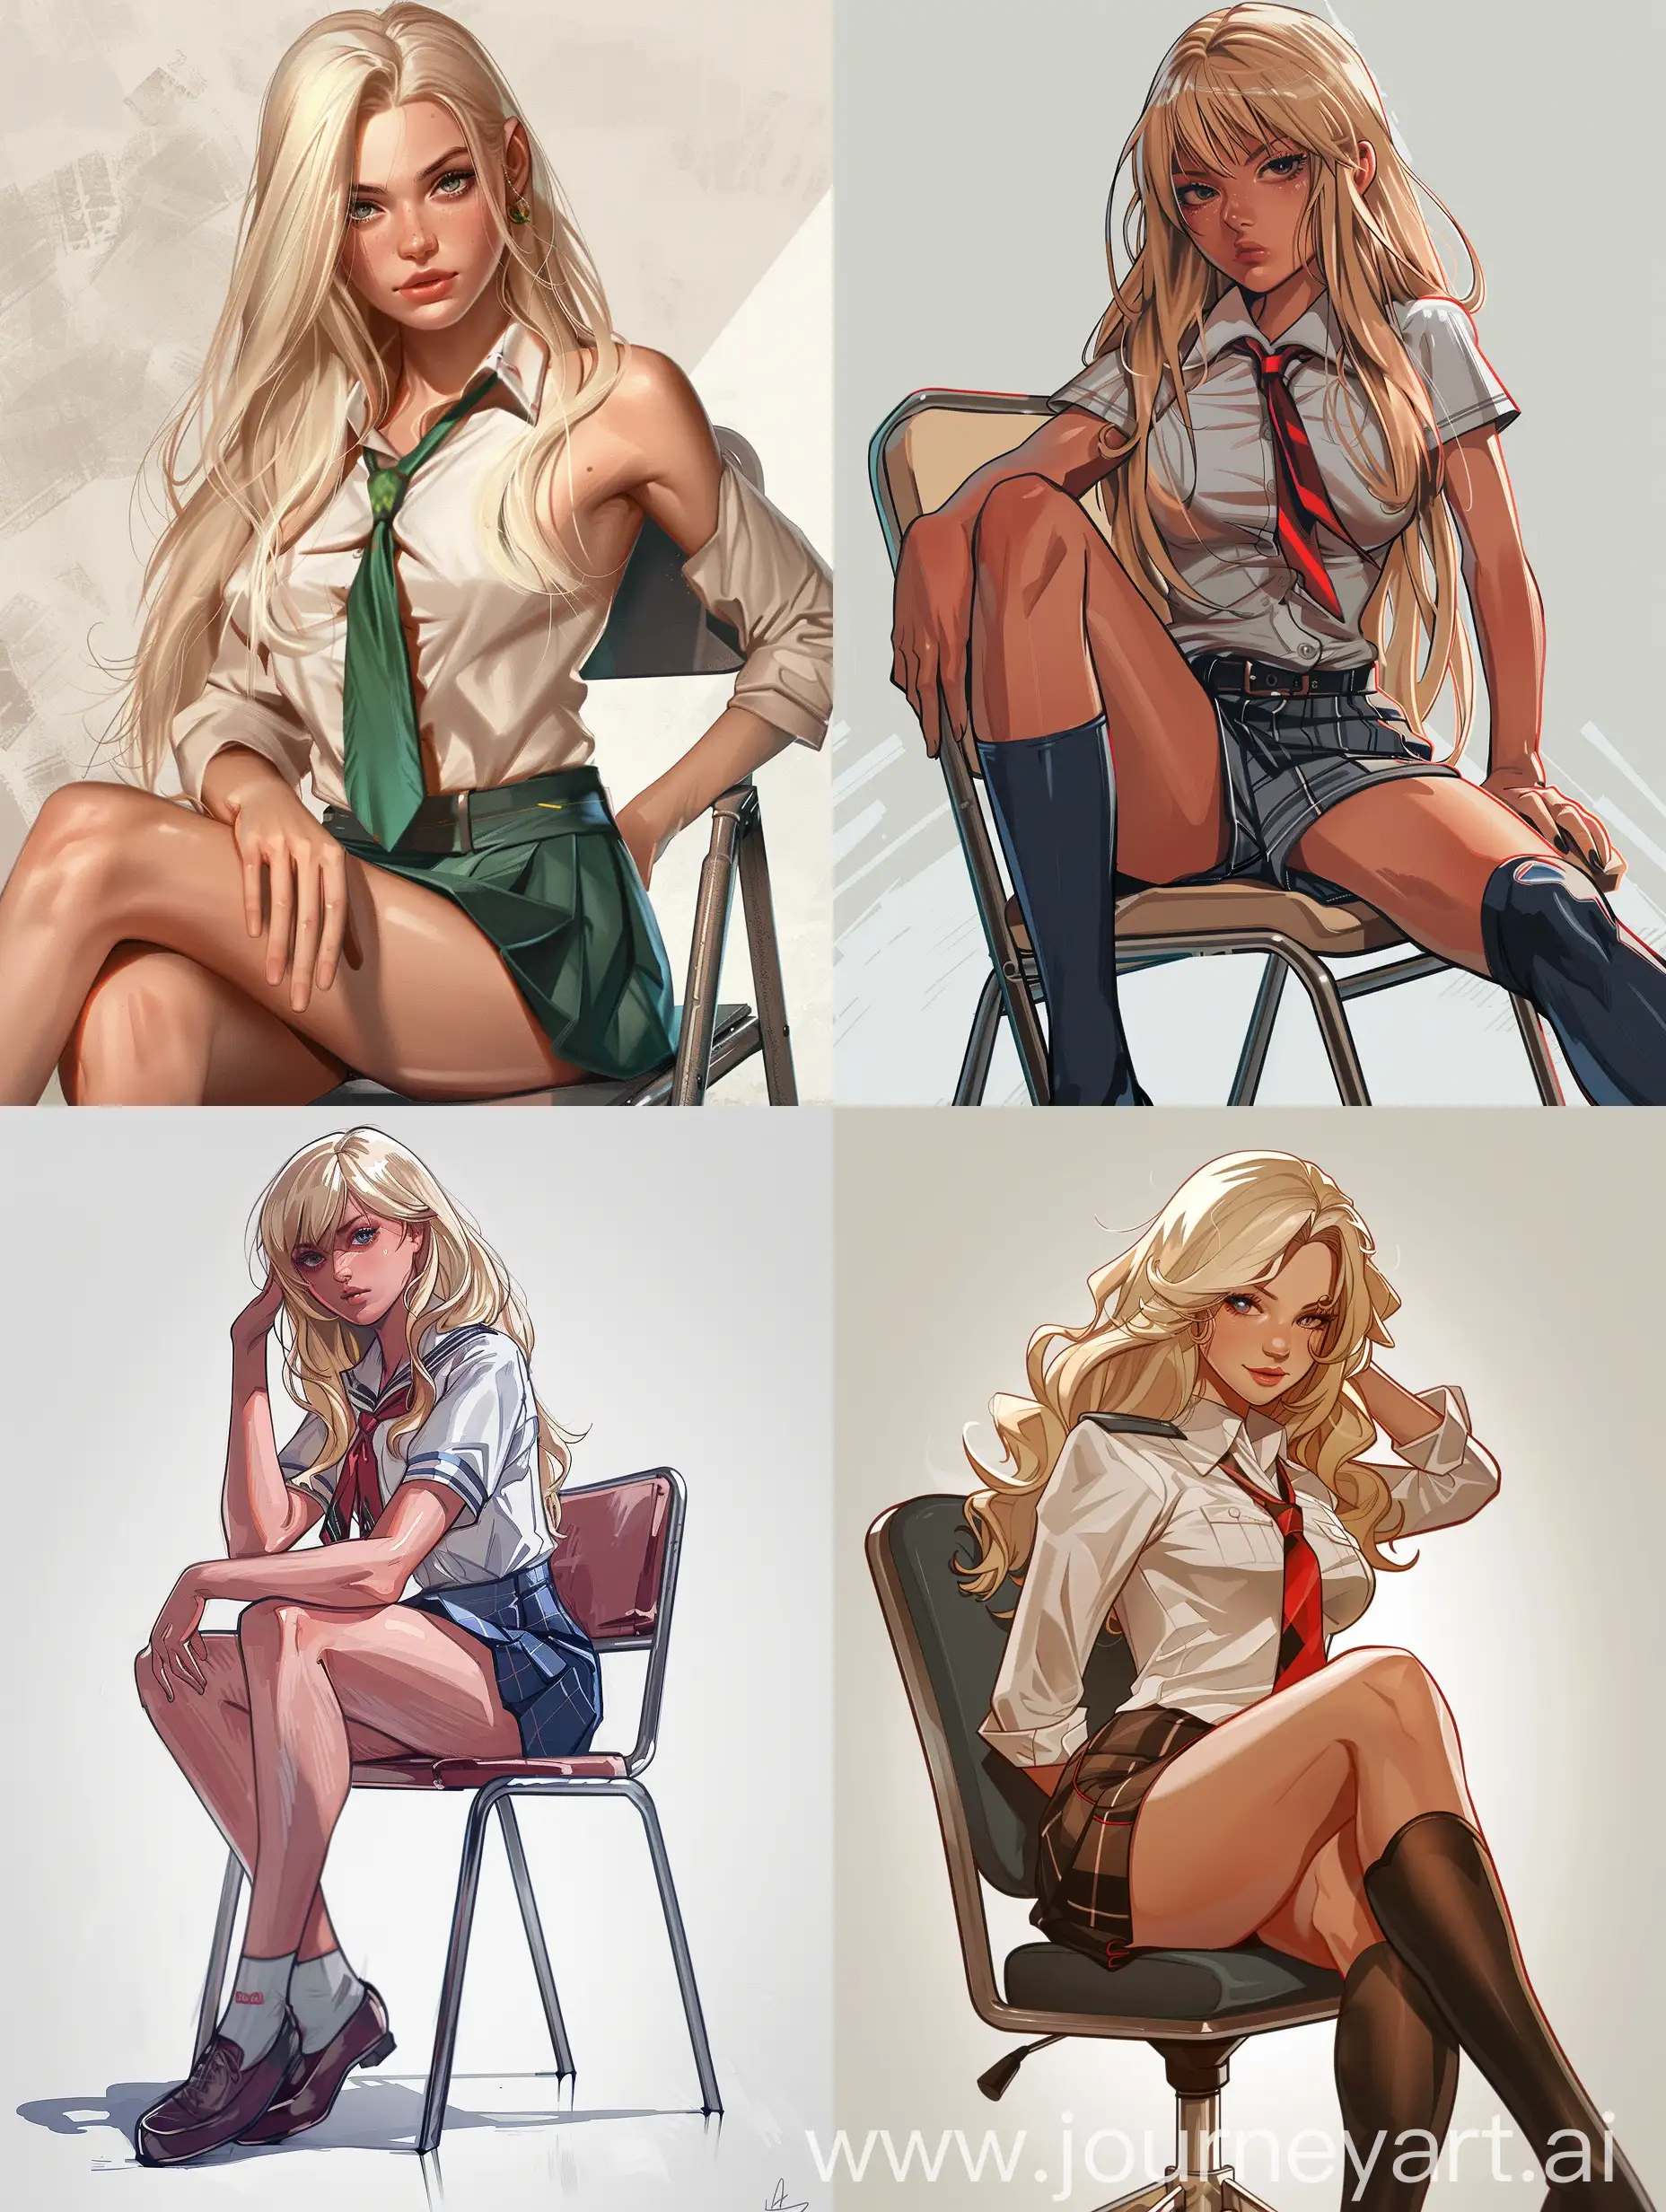 Blonde-Schoolgirl-in-Heroic-Pose-GTA-Style-Artwork